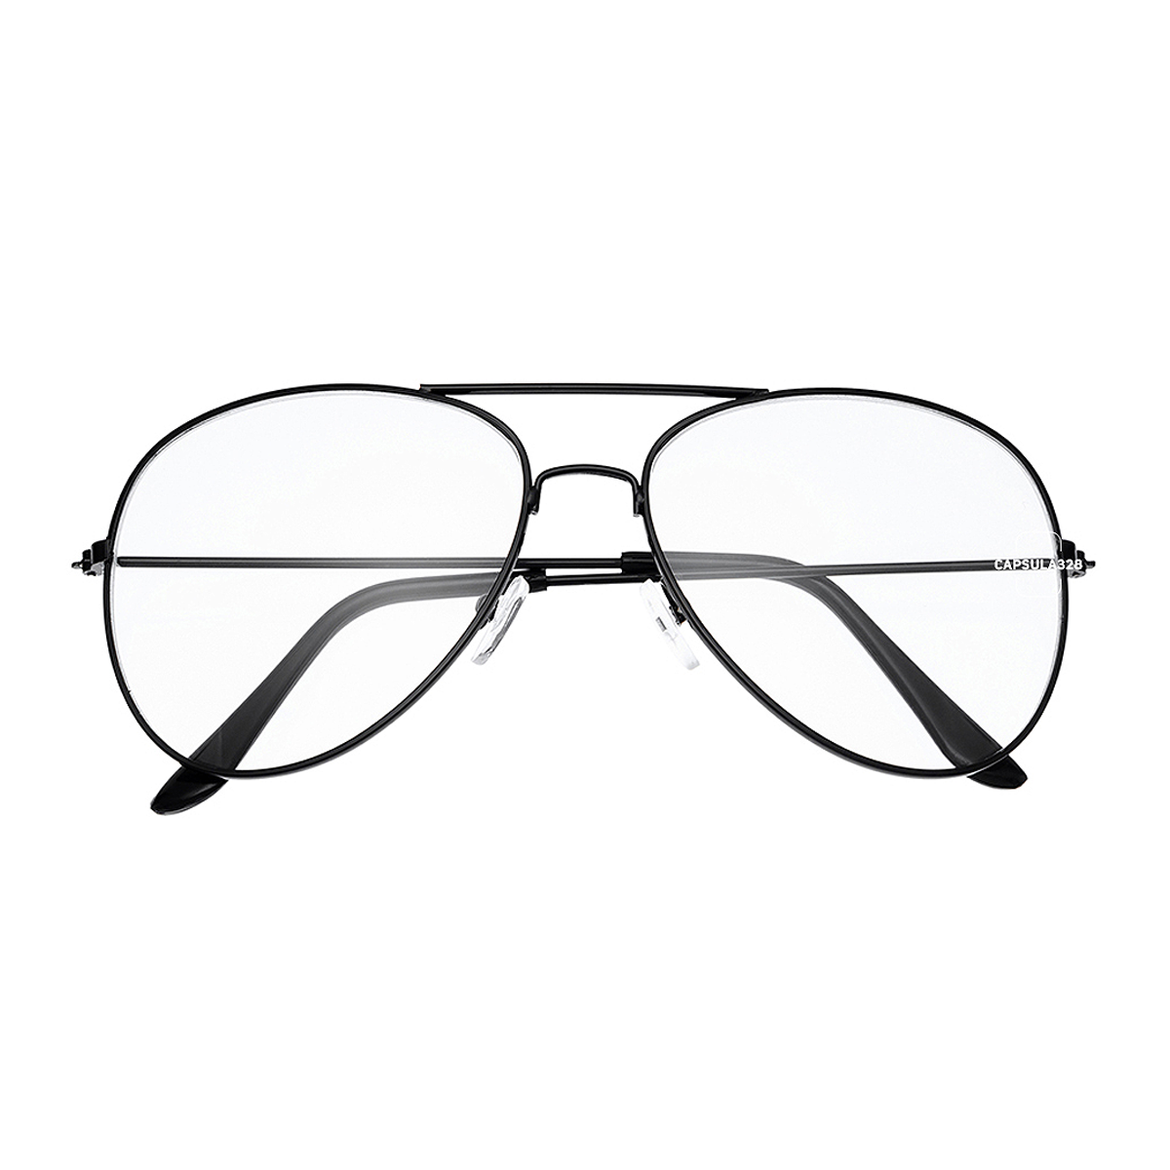 Іміджеві окуляри Aviator 1101